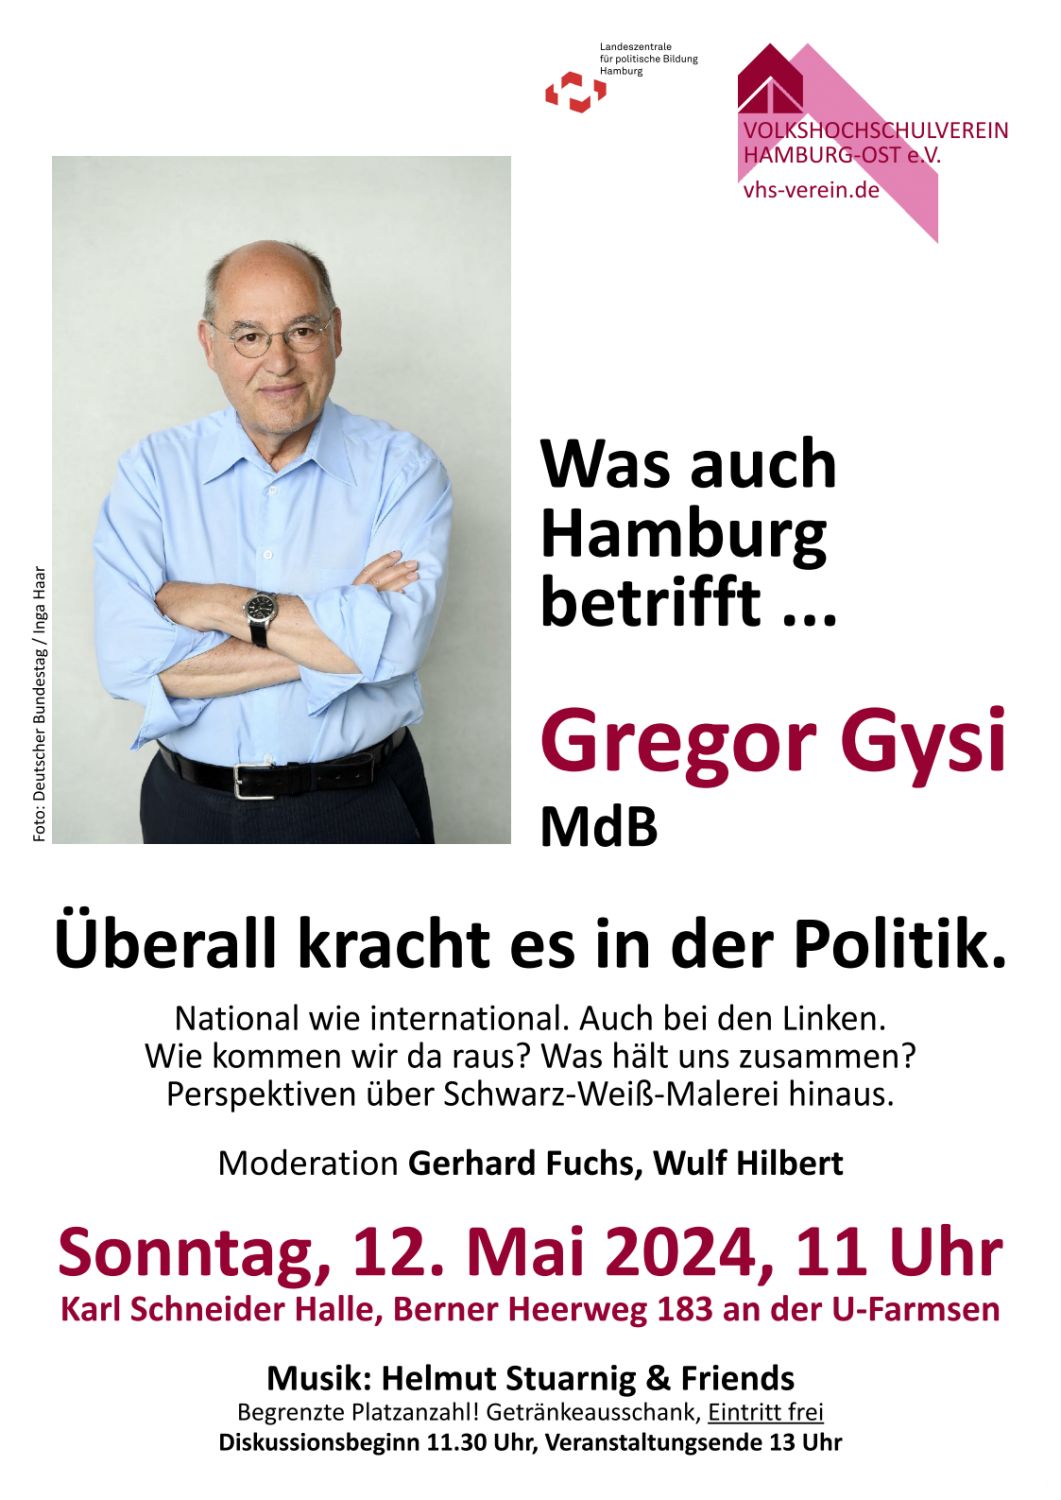 Politik: Podiumsdiskussion - Was auch Hamburg betrifft ... | Gregor Gysi | Überall kracht es in der Politik - Lösungsansätze